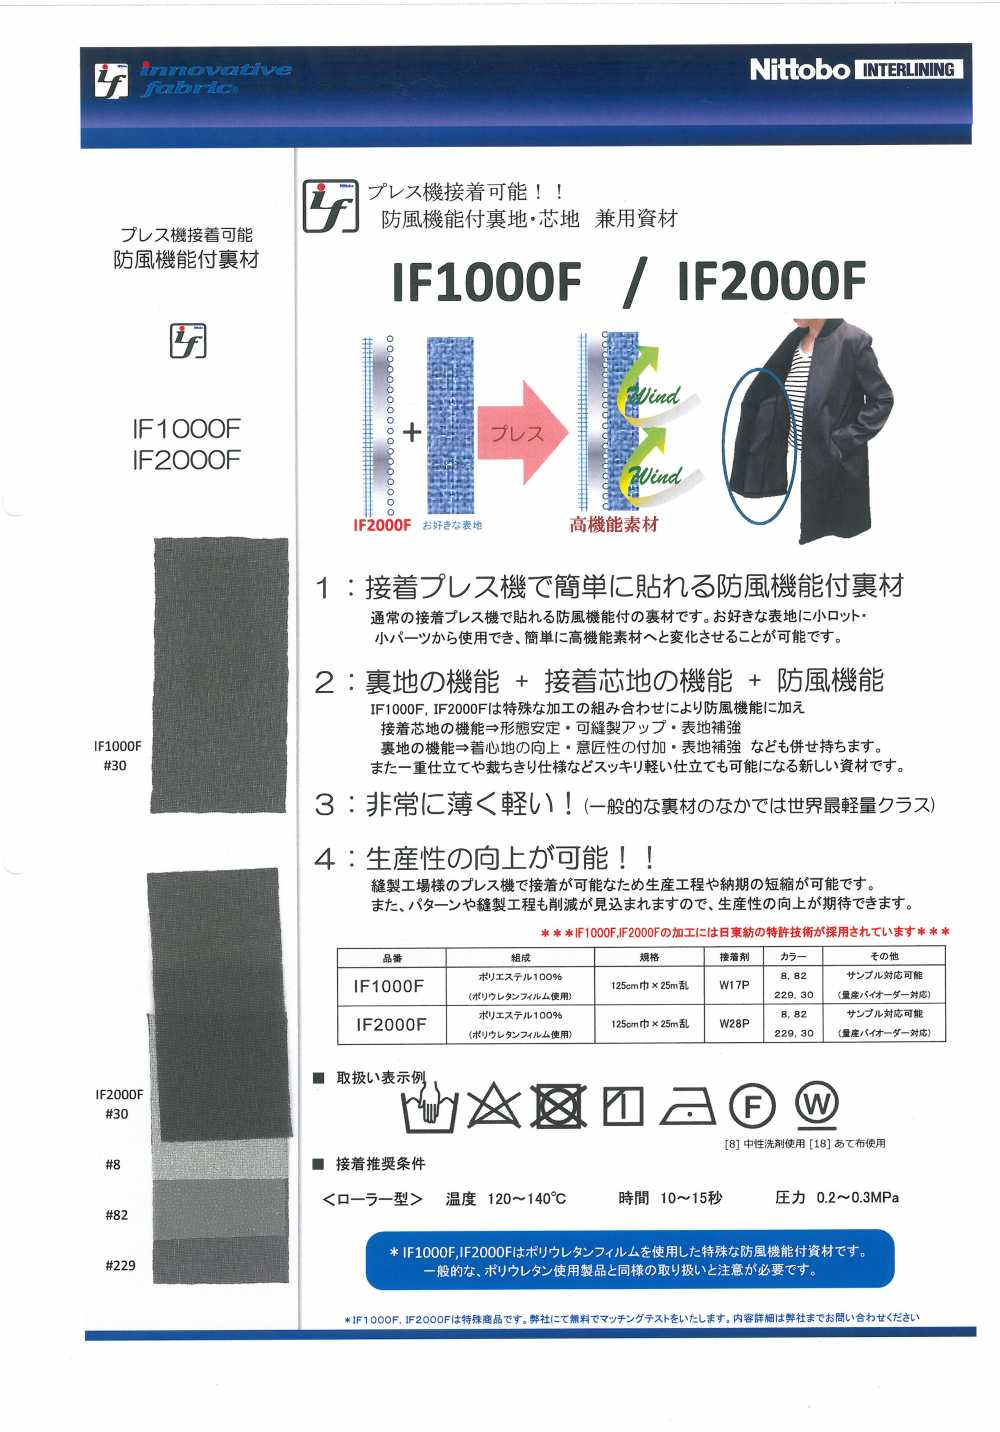 IF2000F 방풍 기능 첨부 안감·심지 겸용 자재 닛토보 (닛토보인터라이닝)